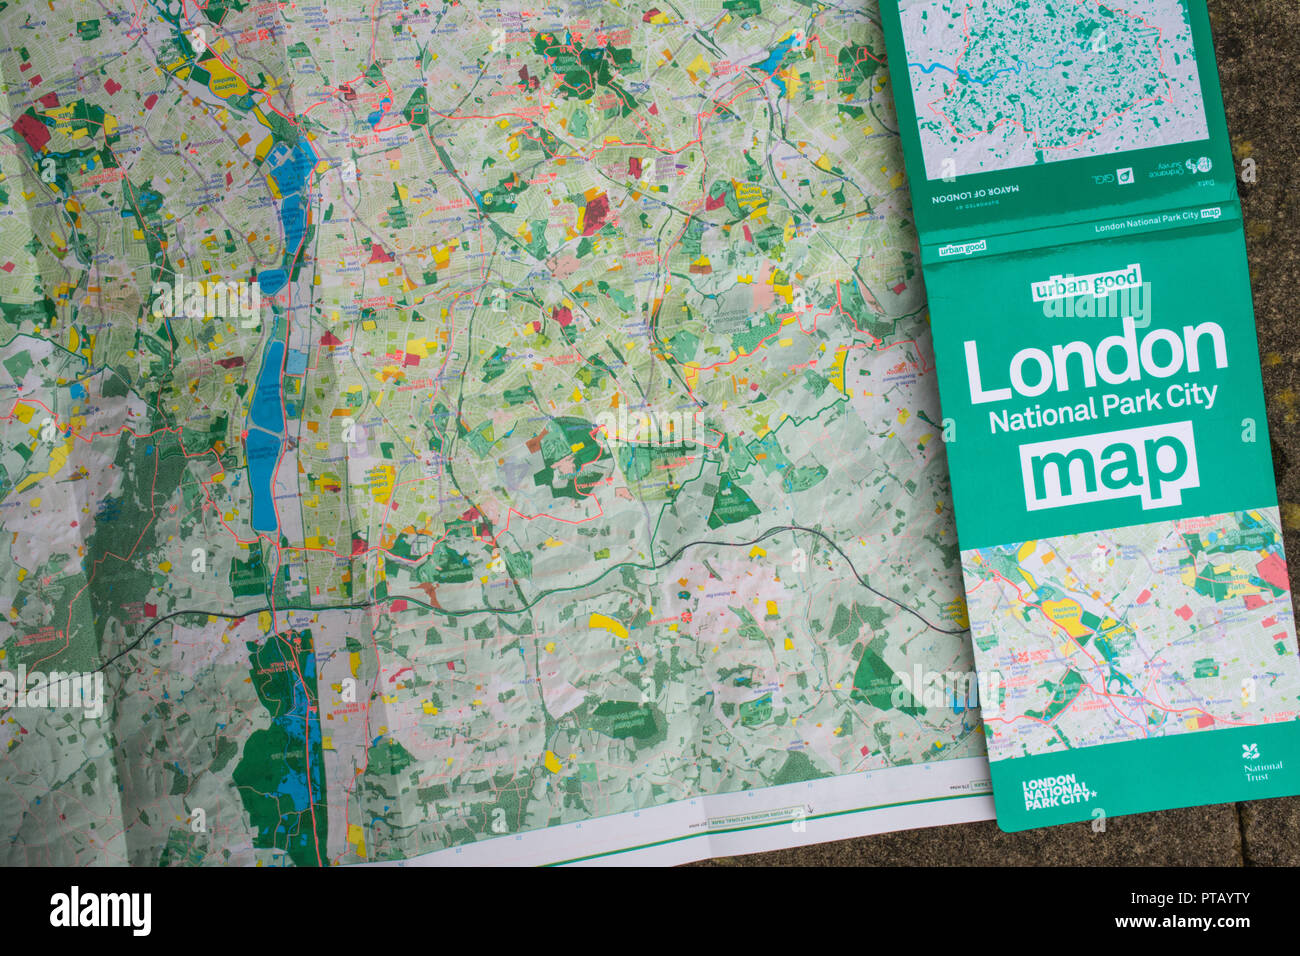 Urban gute London National Park Stadtplan im Jahr 2018 durch das nationale Vertrauen hergestellt Stockfoto